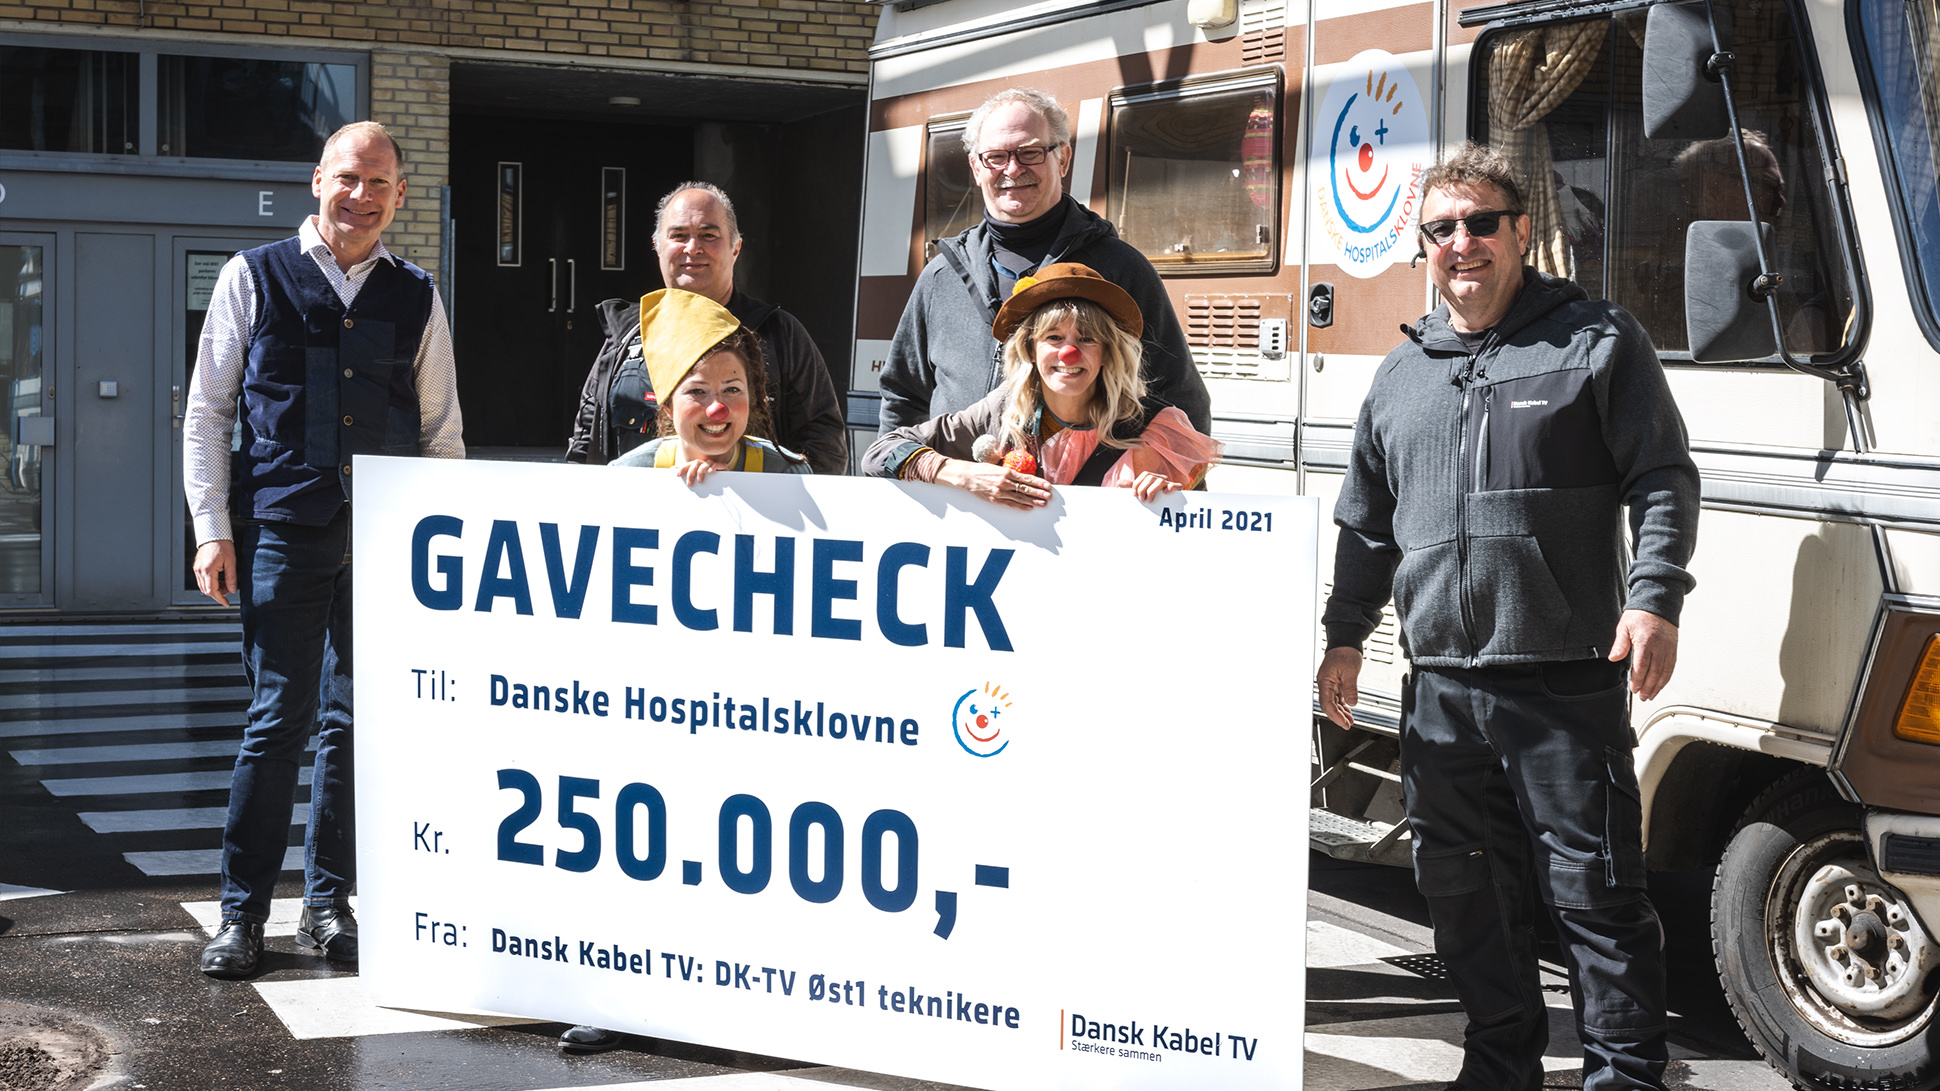 DKTV-teknikere donorer 250.000 kr. fra den gamle klubkasse til Danske Hospitalsklovne